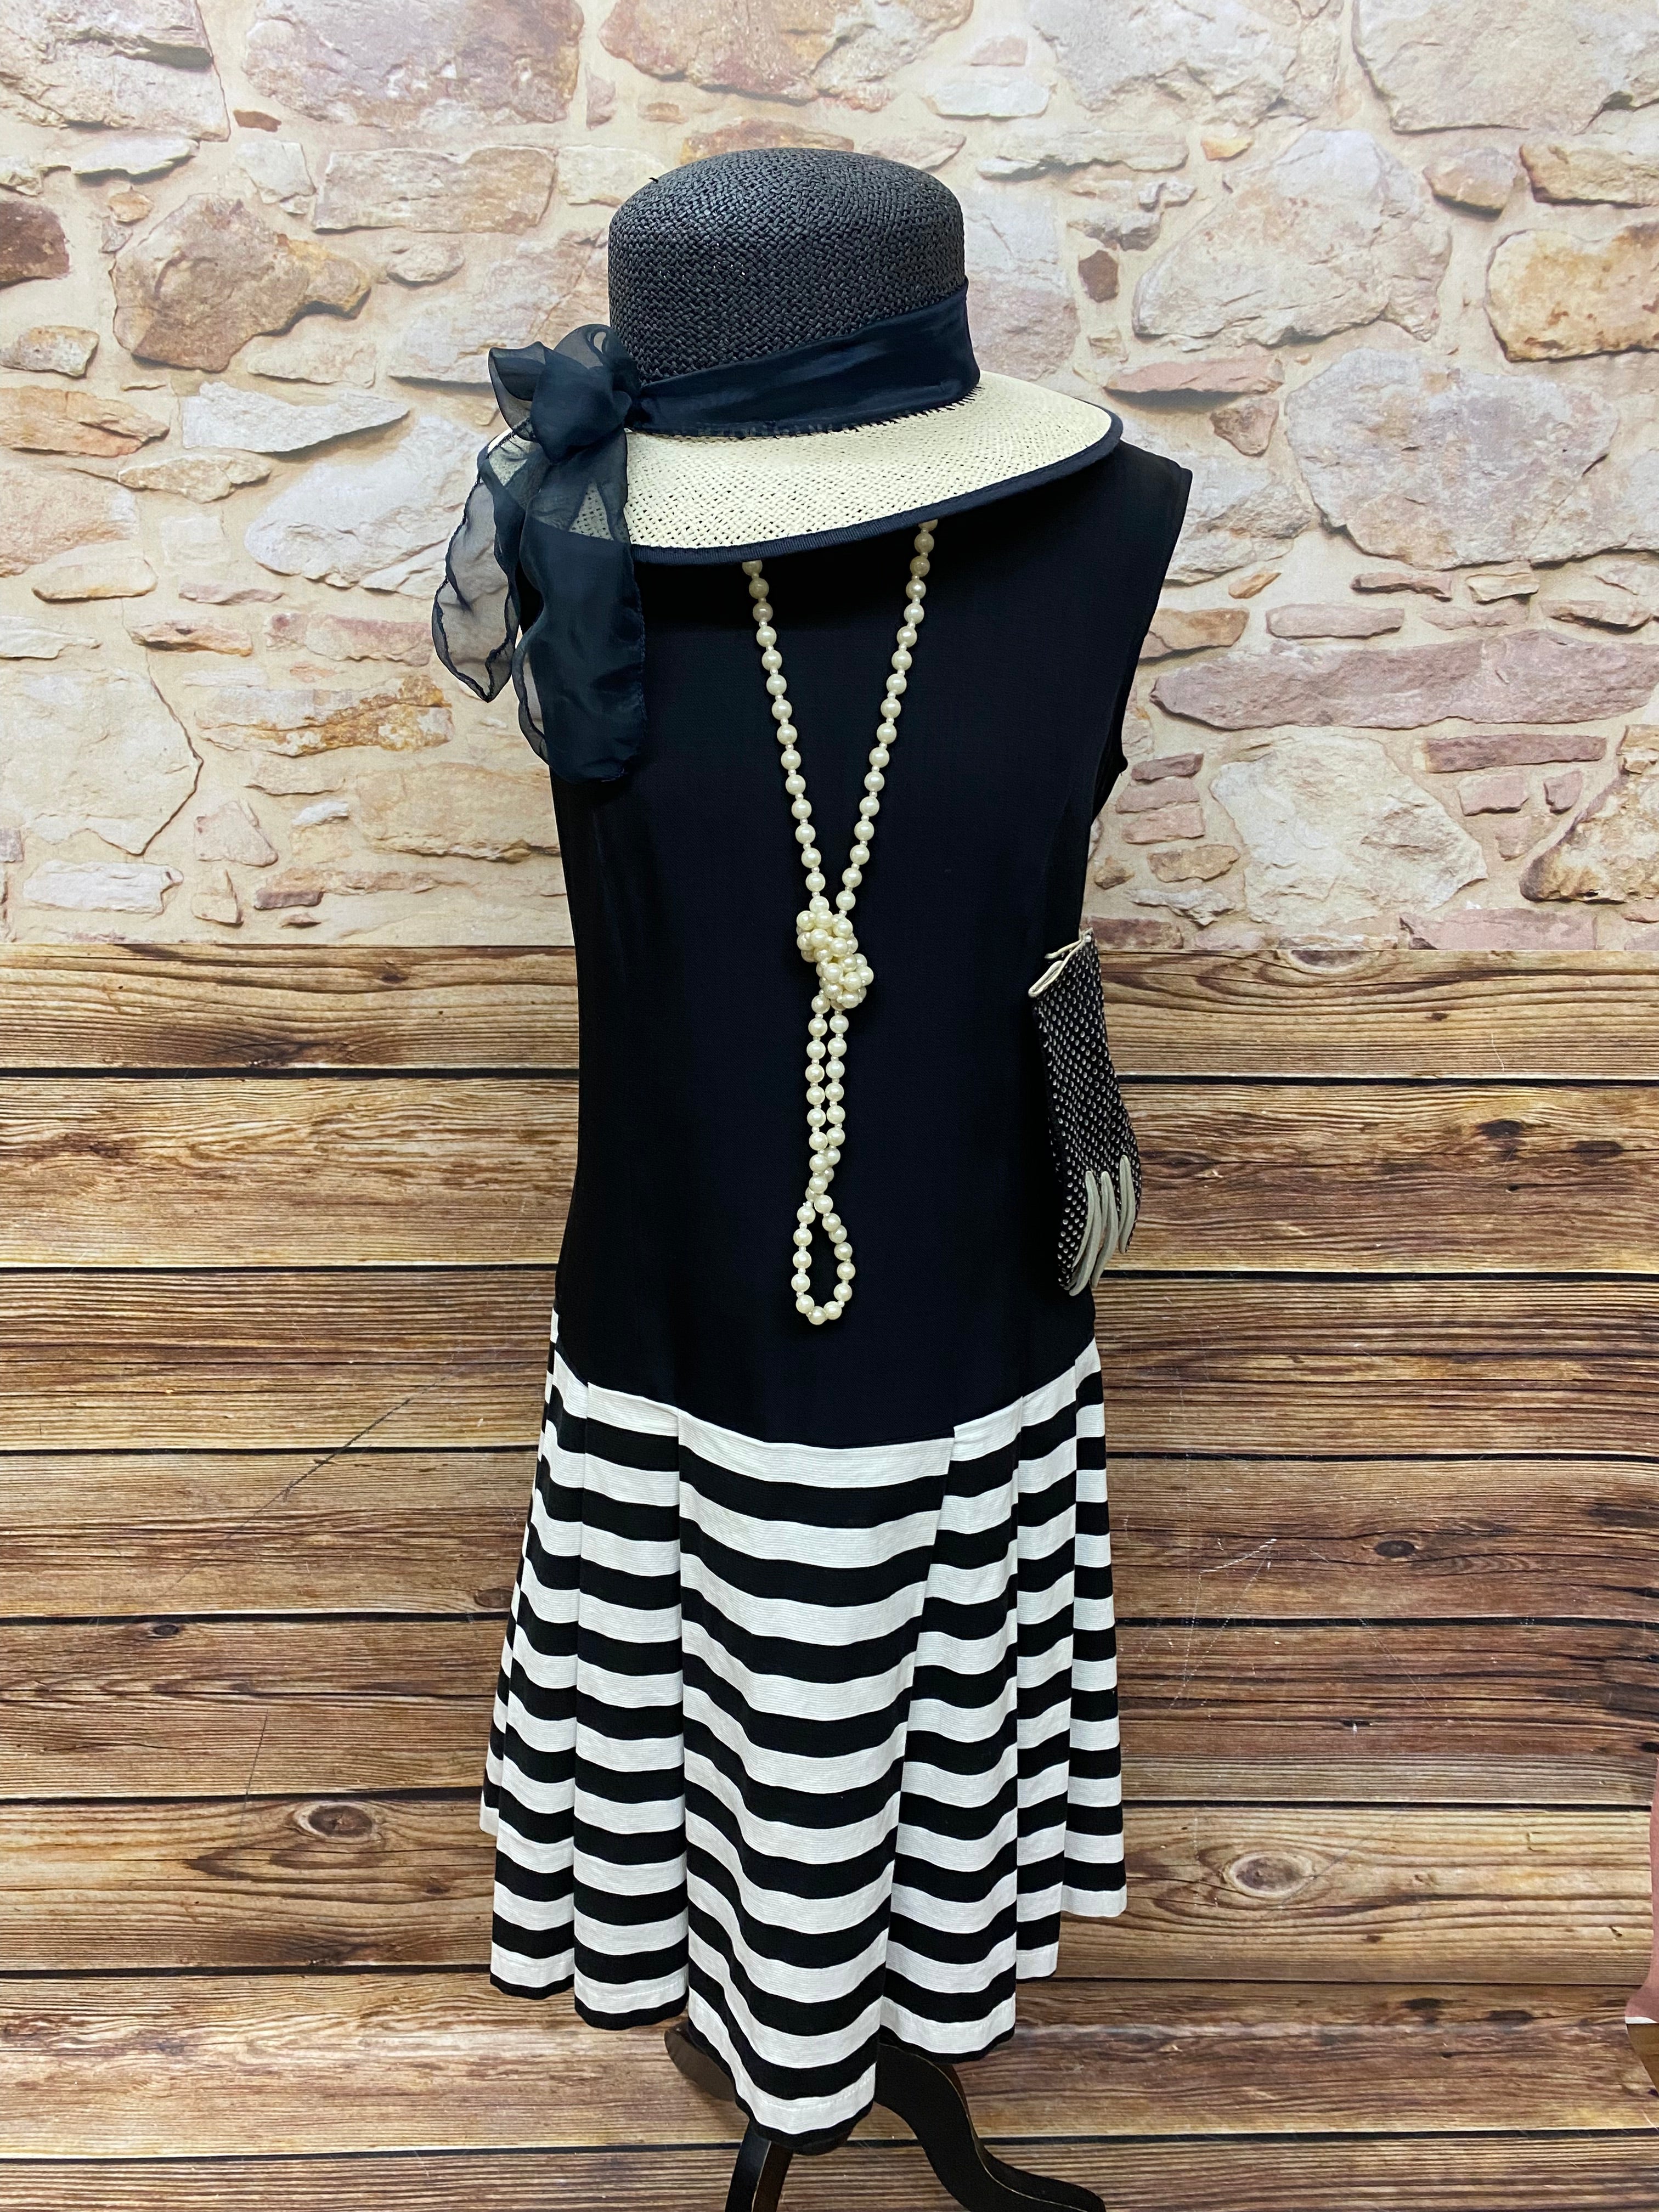 Hochwertiges Kleid im 20er Jahre Stil, Hut, Handschuhe und Perlenkette Gr.40